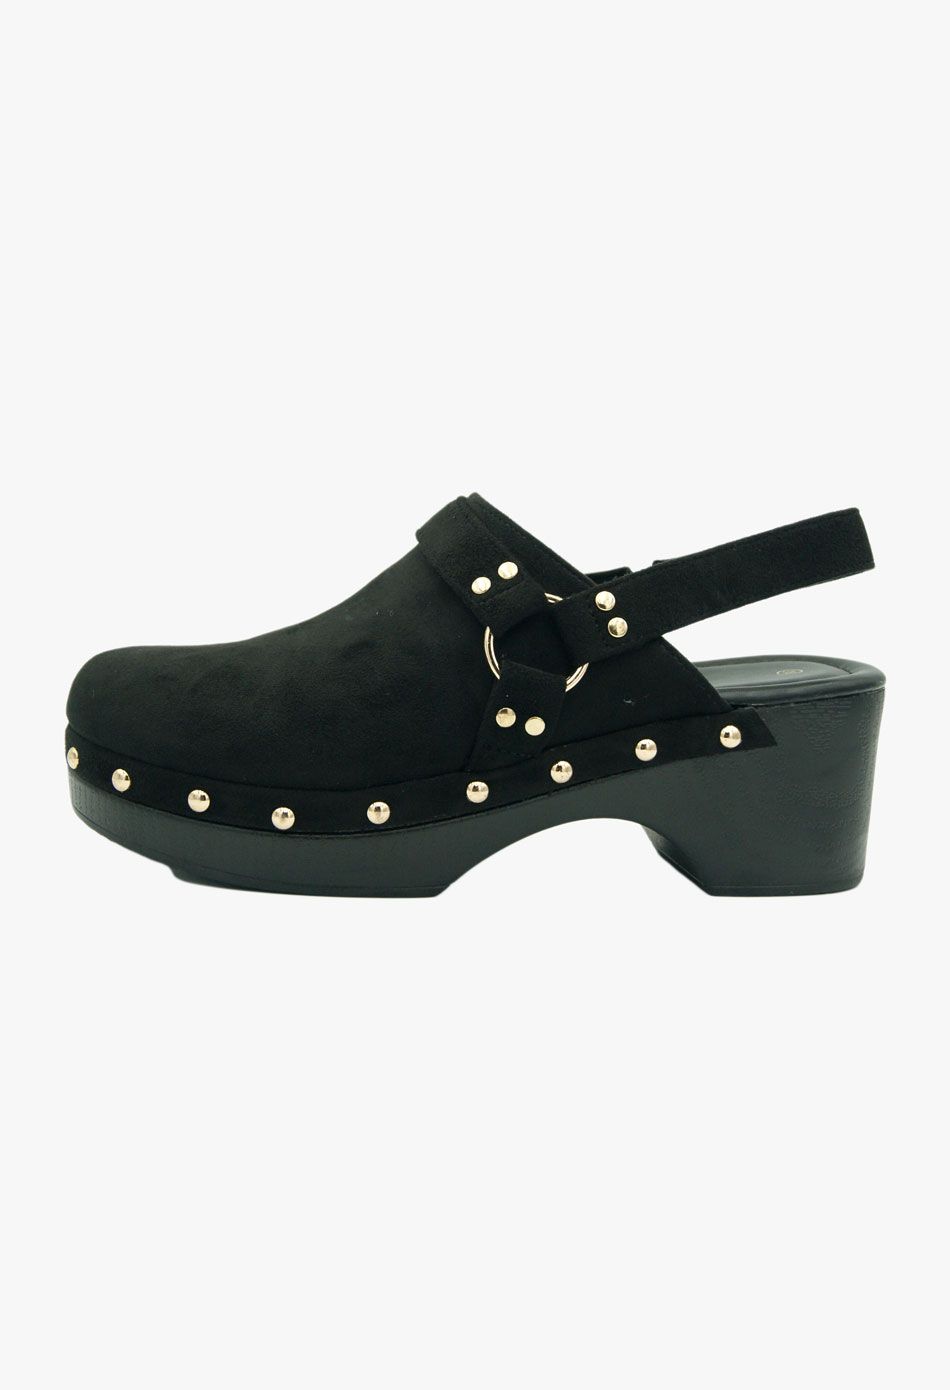 Γυναικεία Πέδιλα με Χοντρό Μεσαίο Τακούνι σε Μαύρο Χρώμα / 68238-black Ανοιχτά Παπούτσια joya.gr